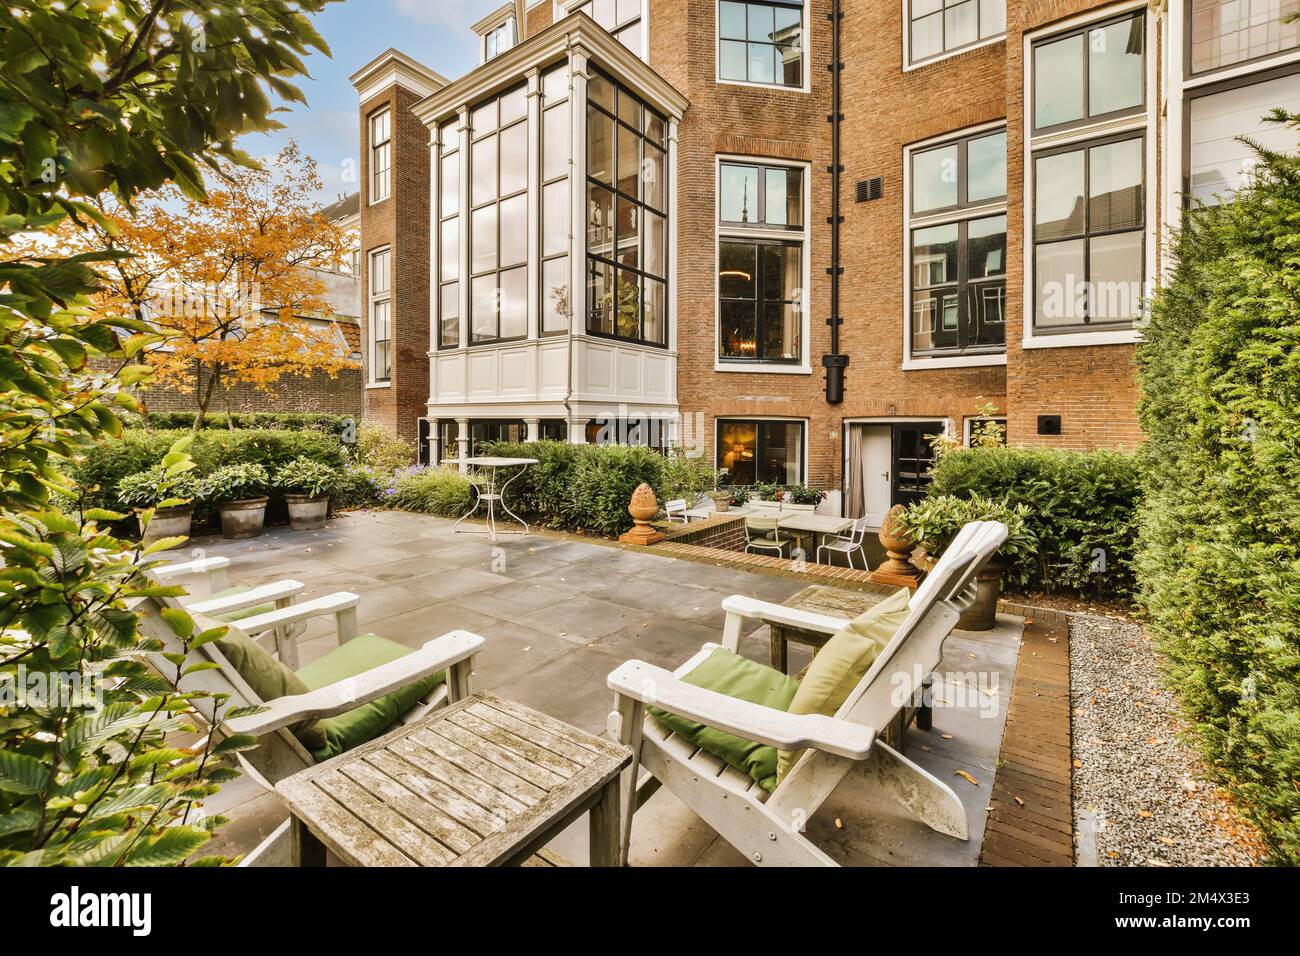 Ein Terrassenbereich mit Stühlen und Tischen im mittleren Teil eines Apartmentgebäudes, das von grünen Bäumen umgeben ist Stockfoto